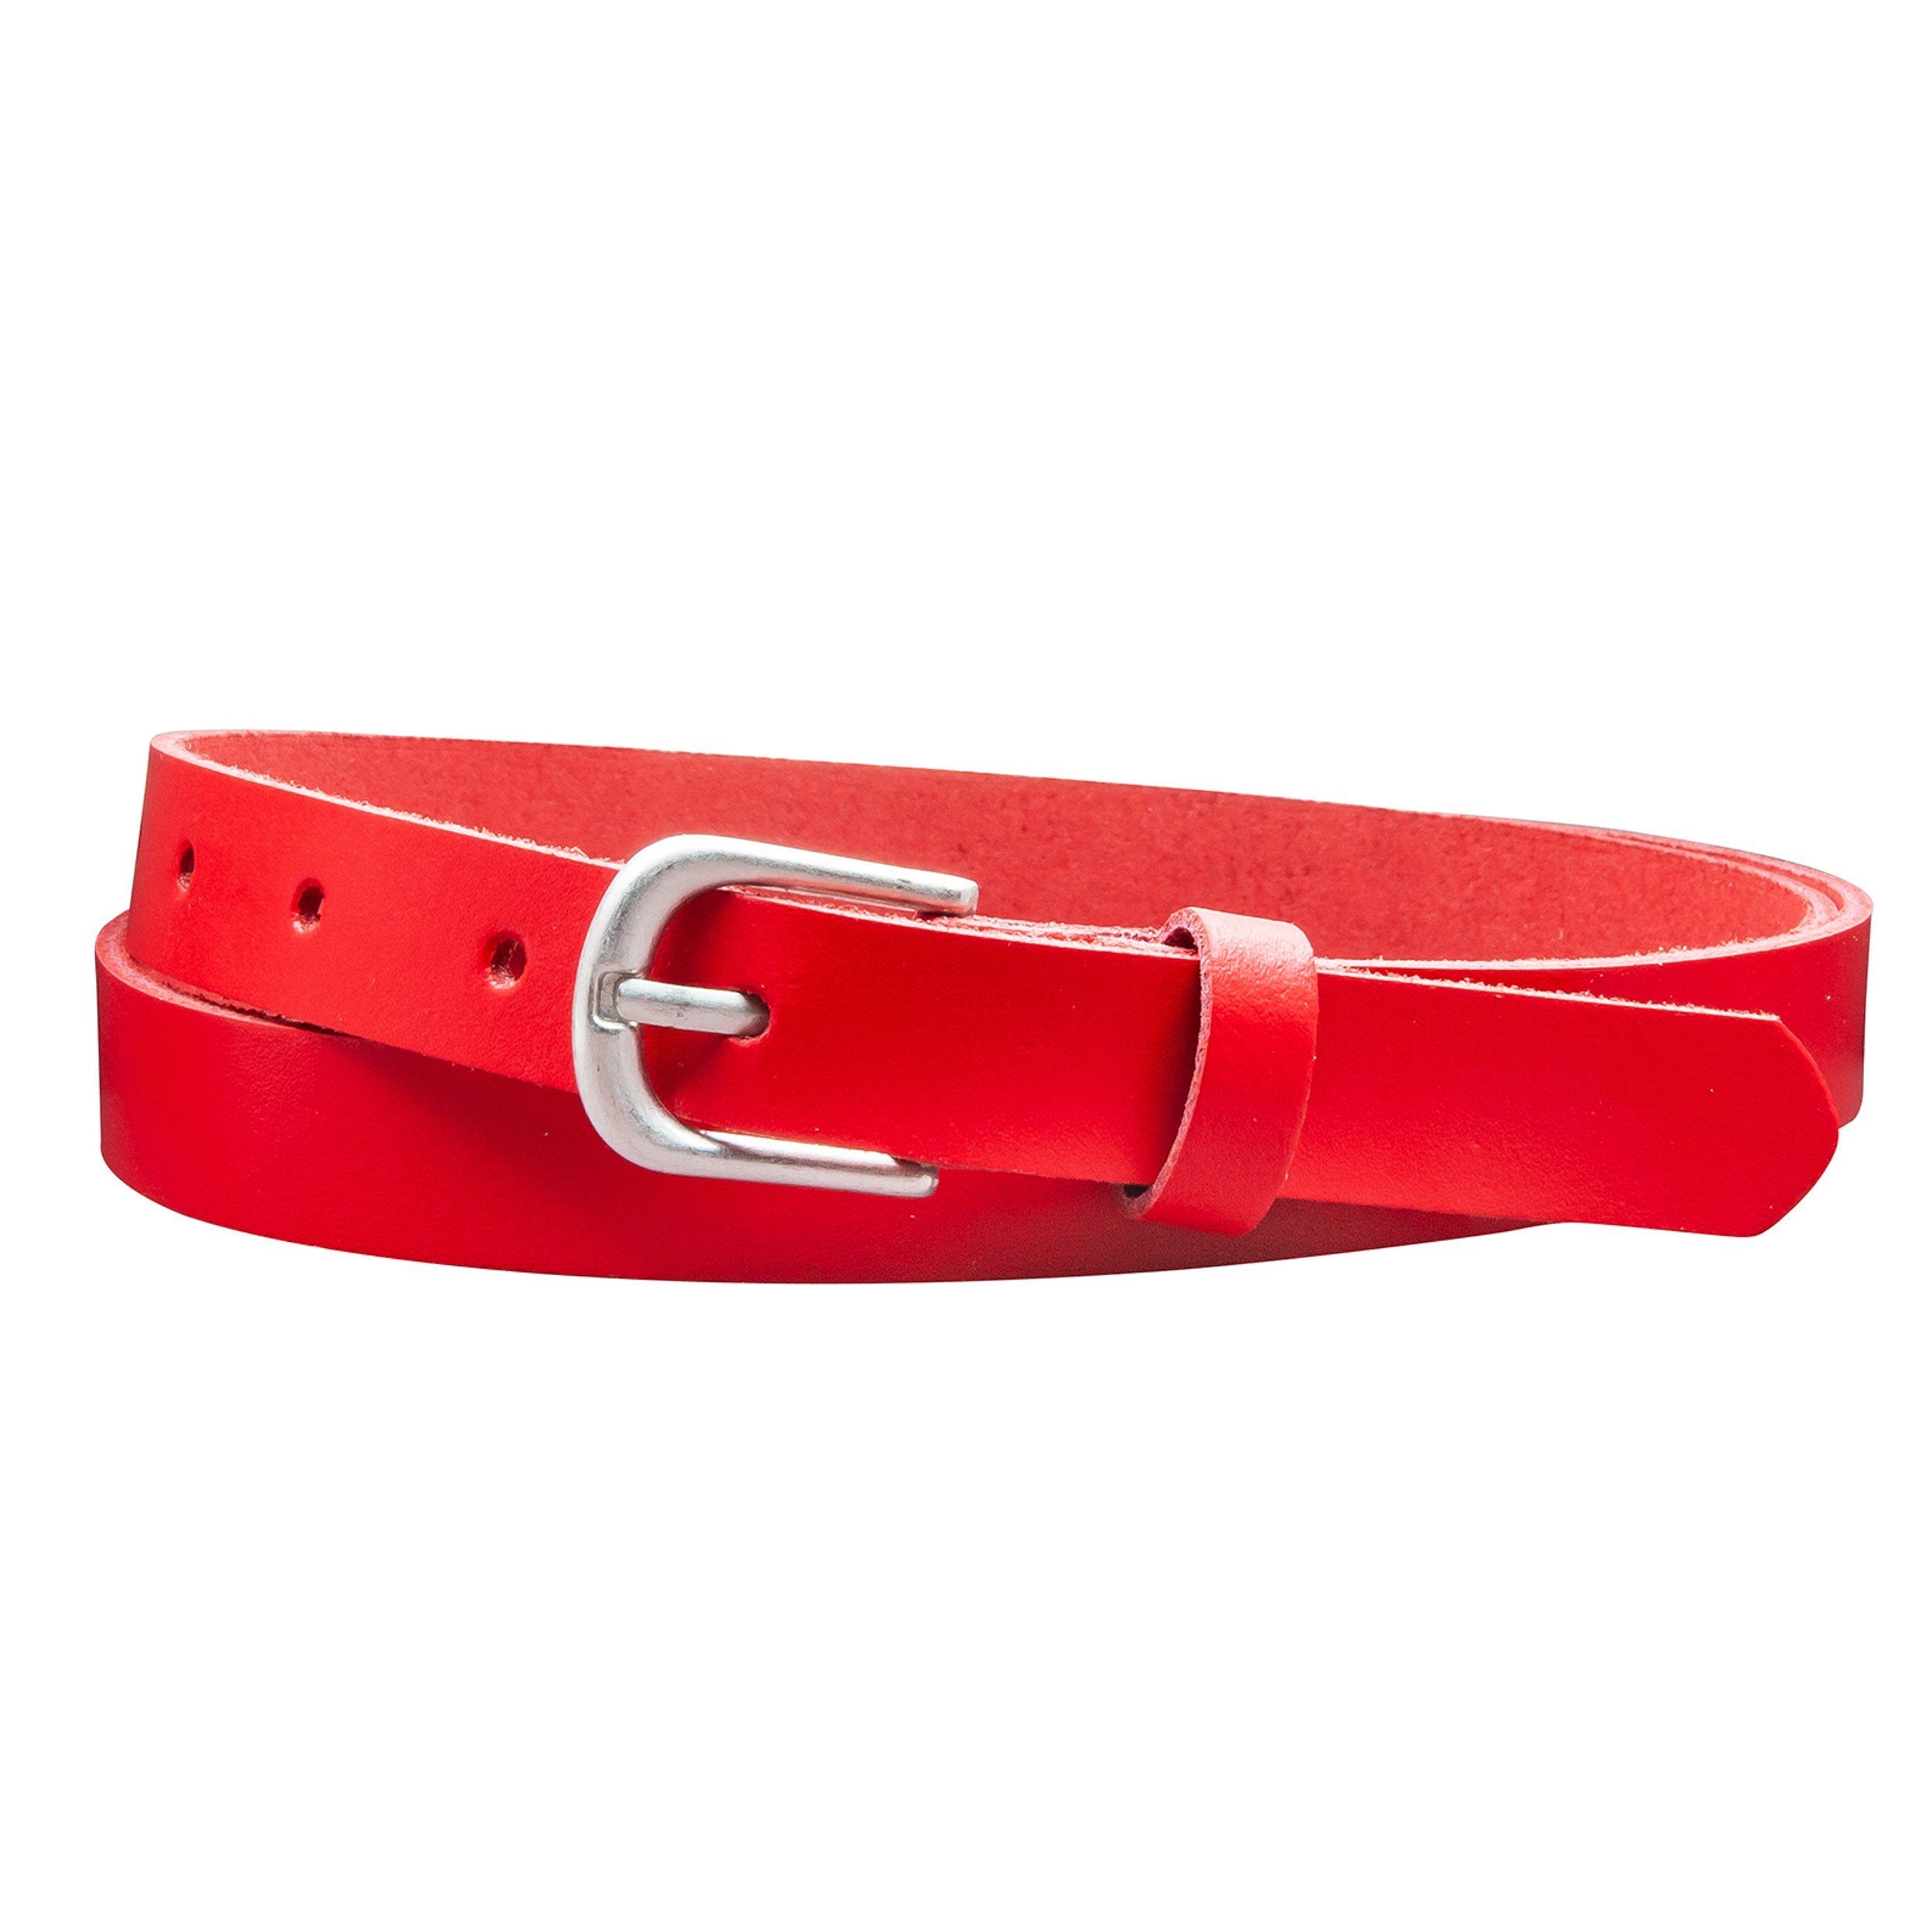 COLOGNEBELT Ledergürtel A6-SL Gürtel 2 cm breit in Rot im klassischen Look mit einfacher Gürtelschließe, echtes Leder